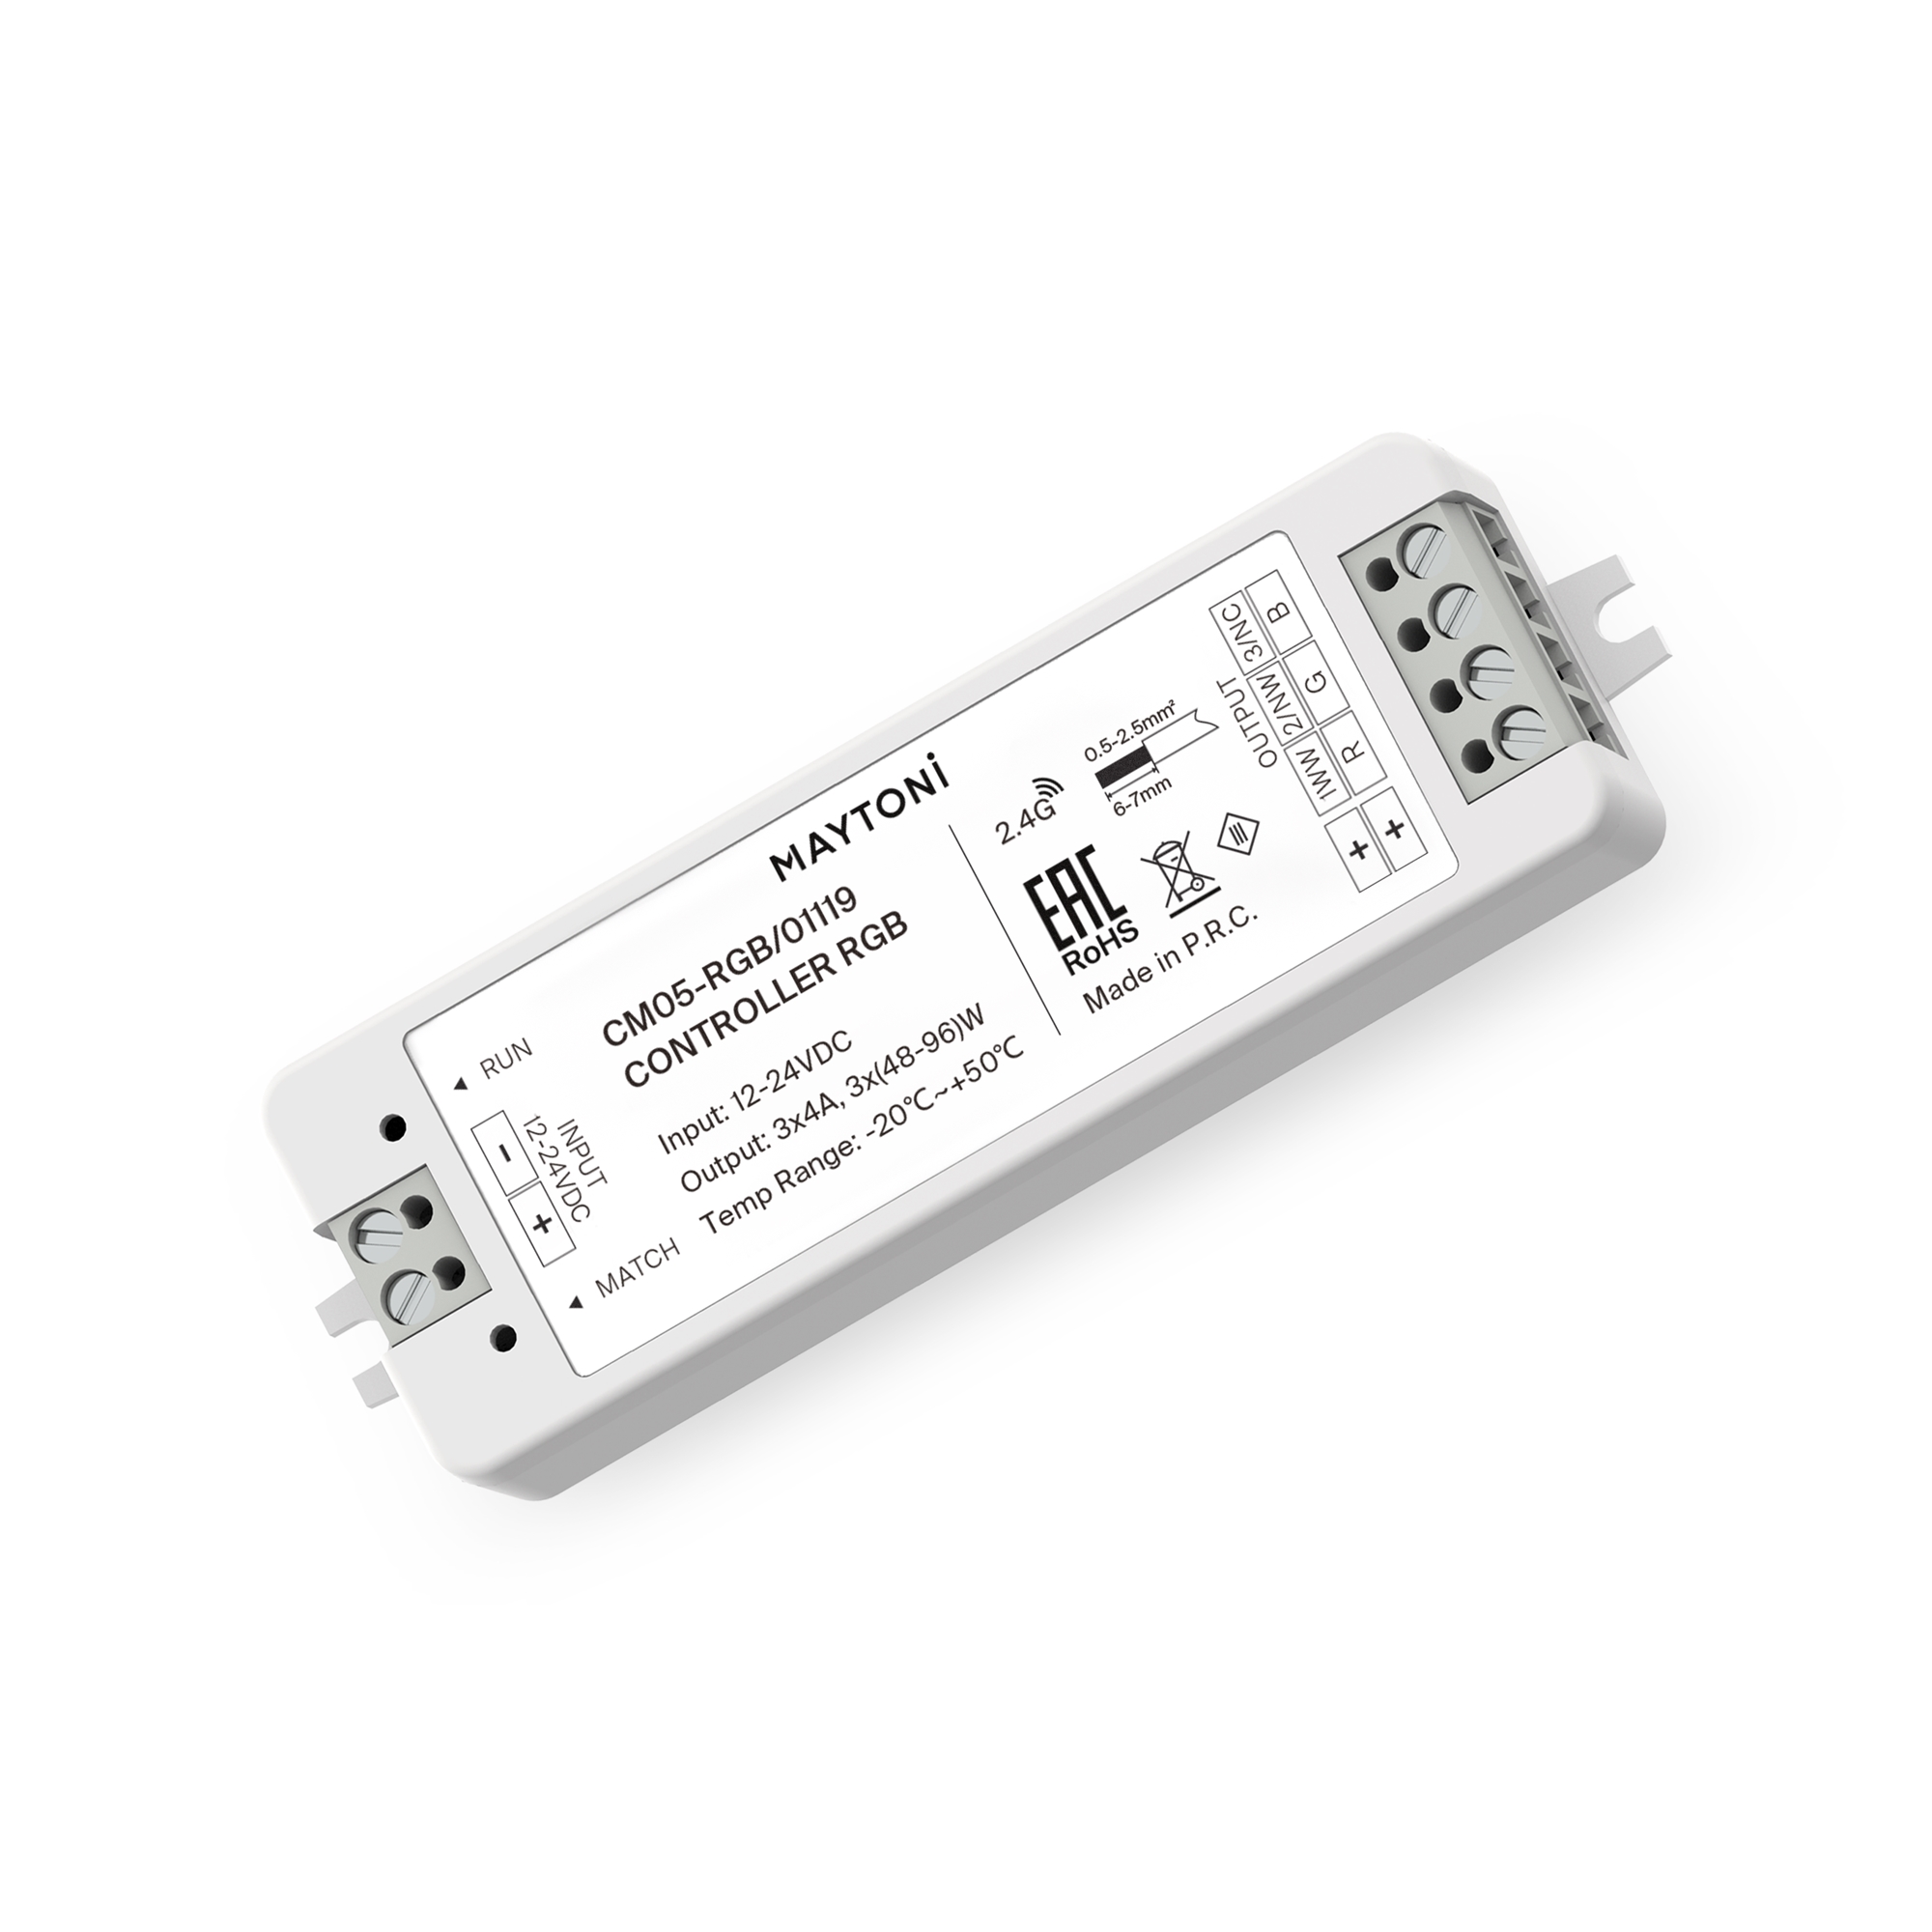 Контроллер для светодиодной ленты RGB 144Вт/288Вт 01119 контроллер для светодиодной ленты mix clm004